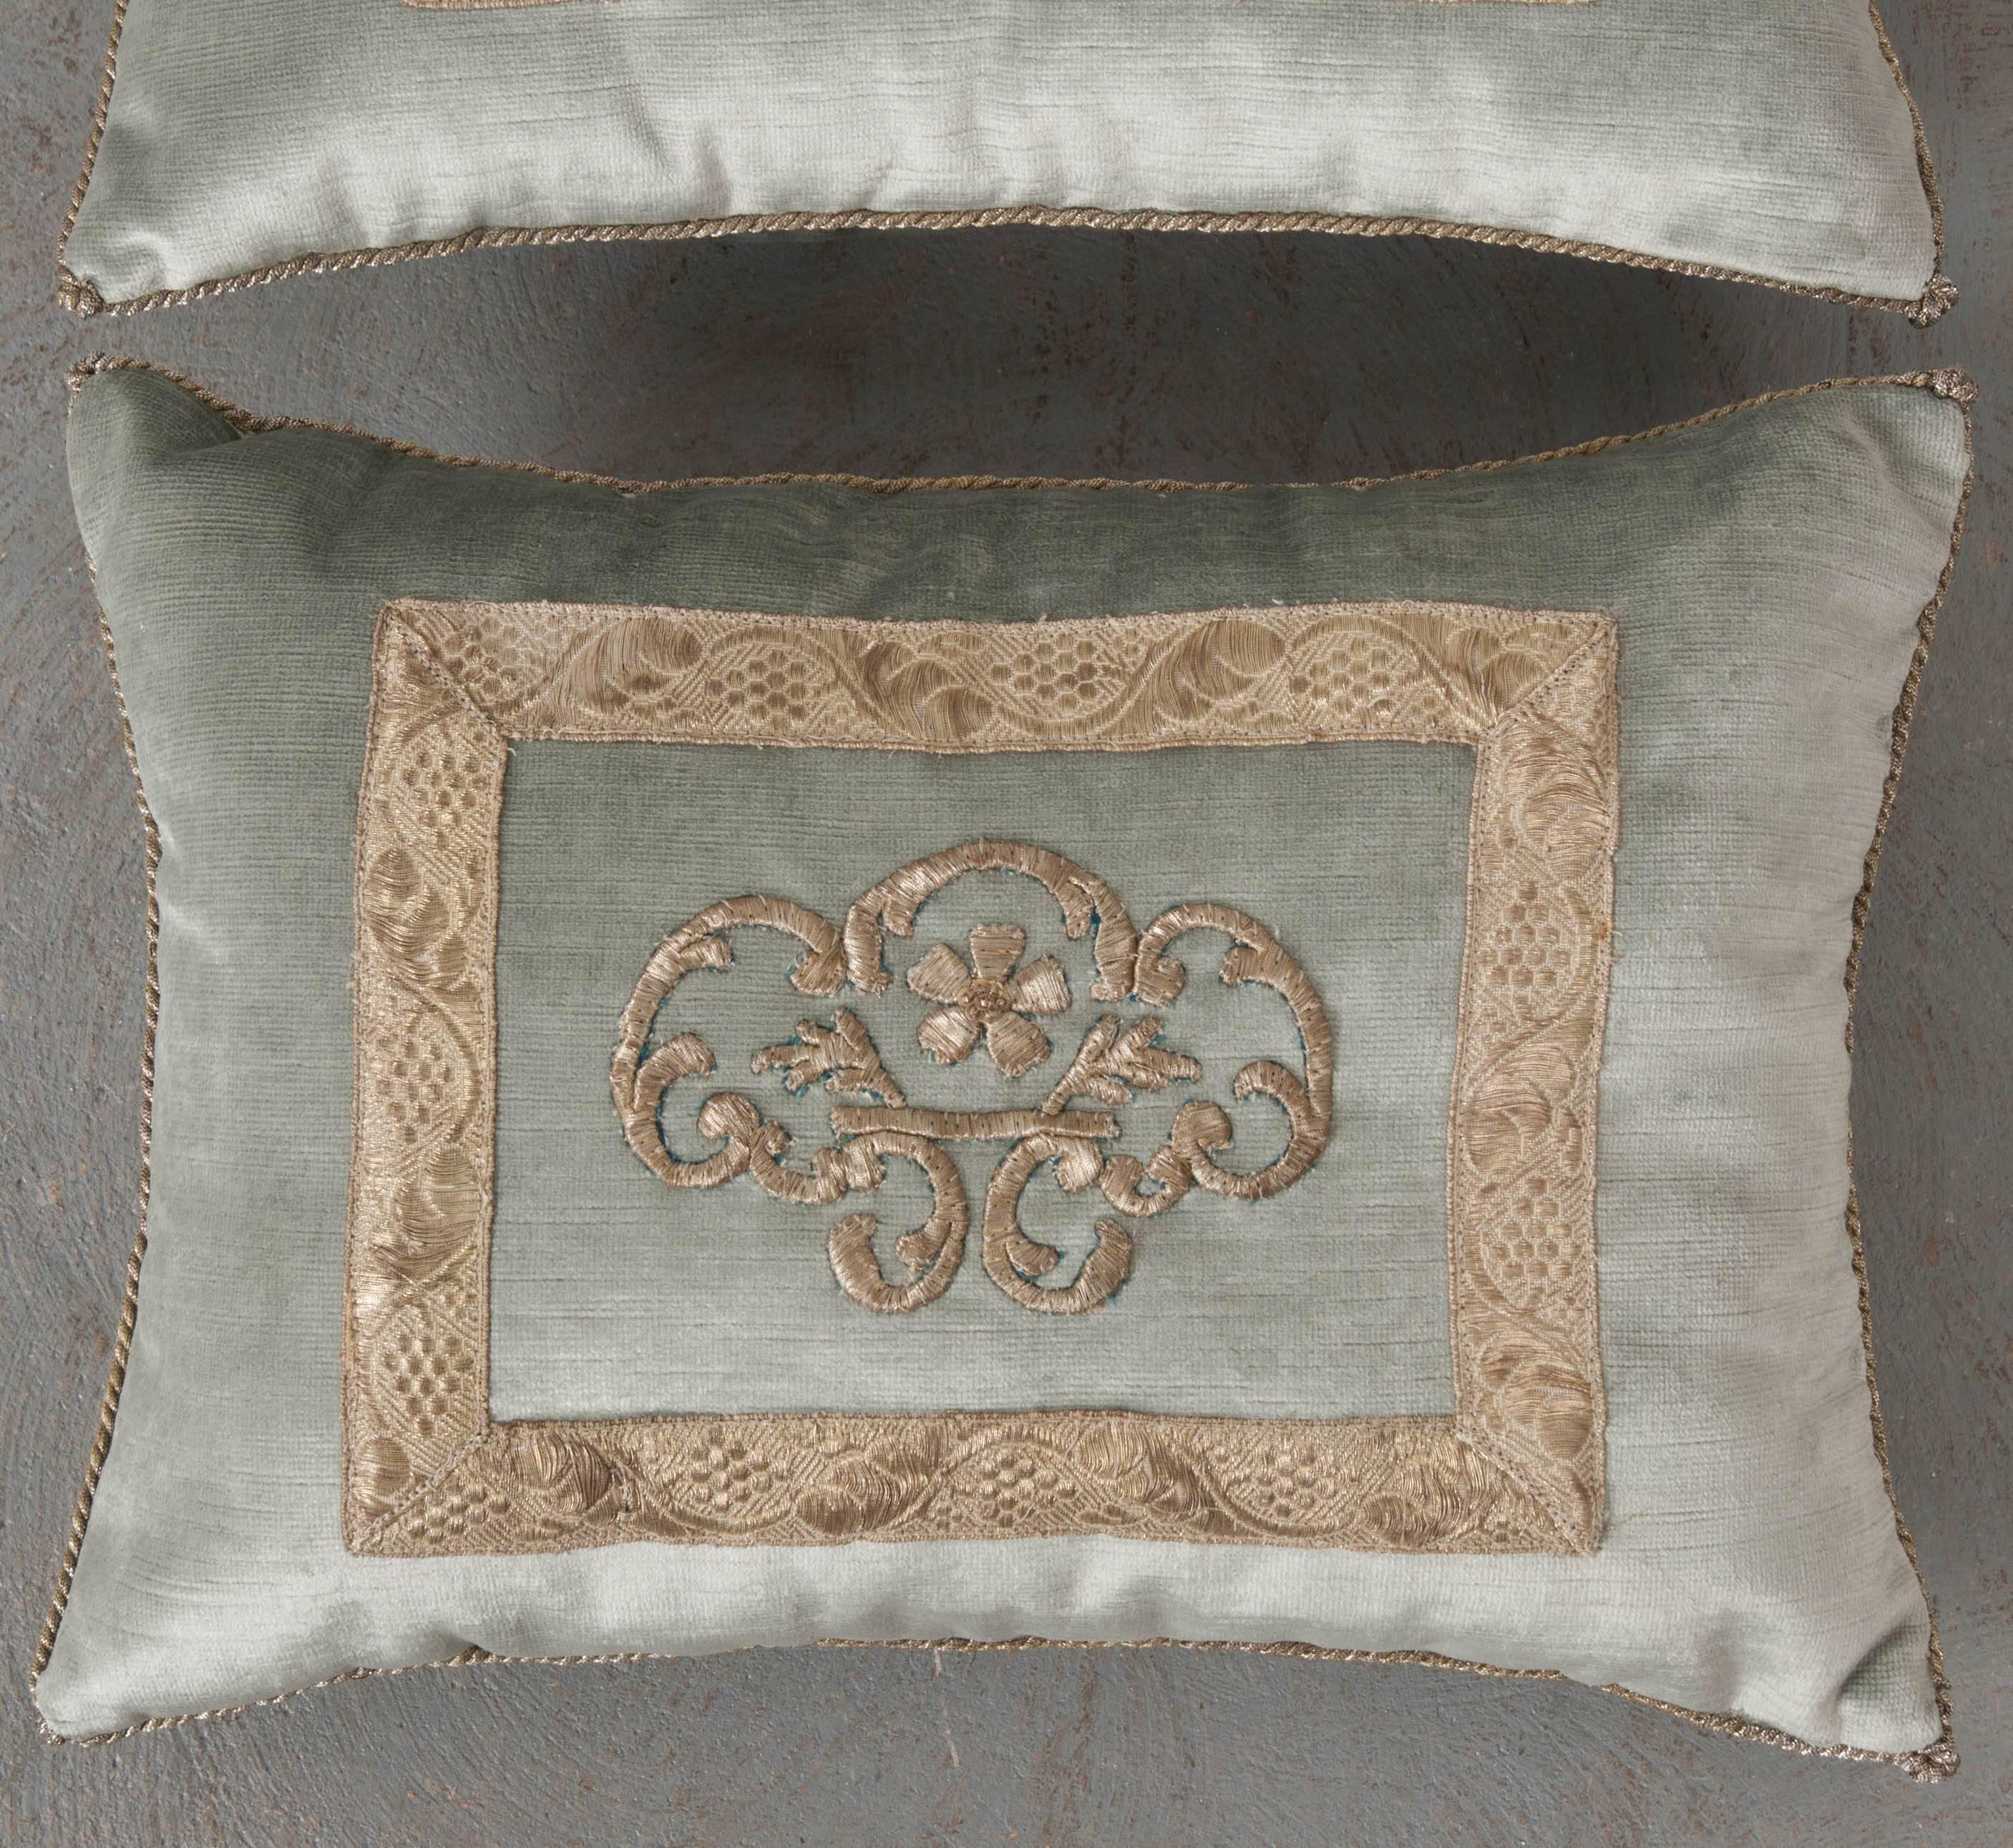 Persian Antique Textile Pillow by B.Viz Designs